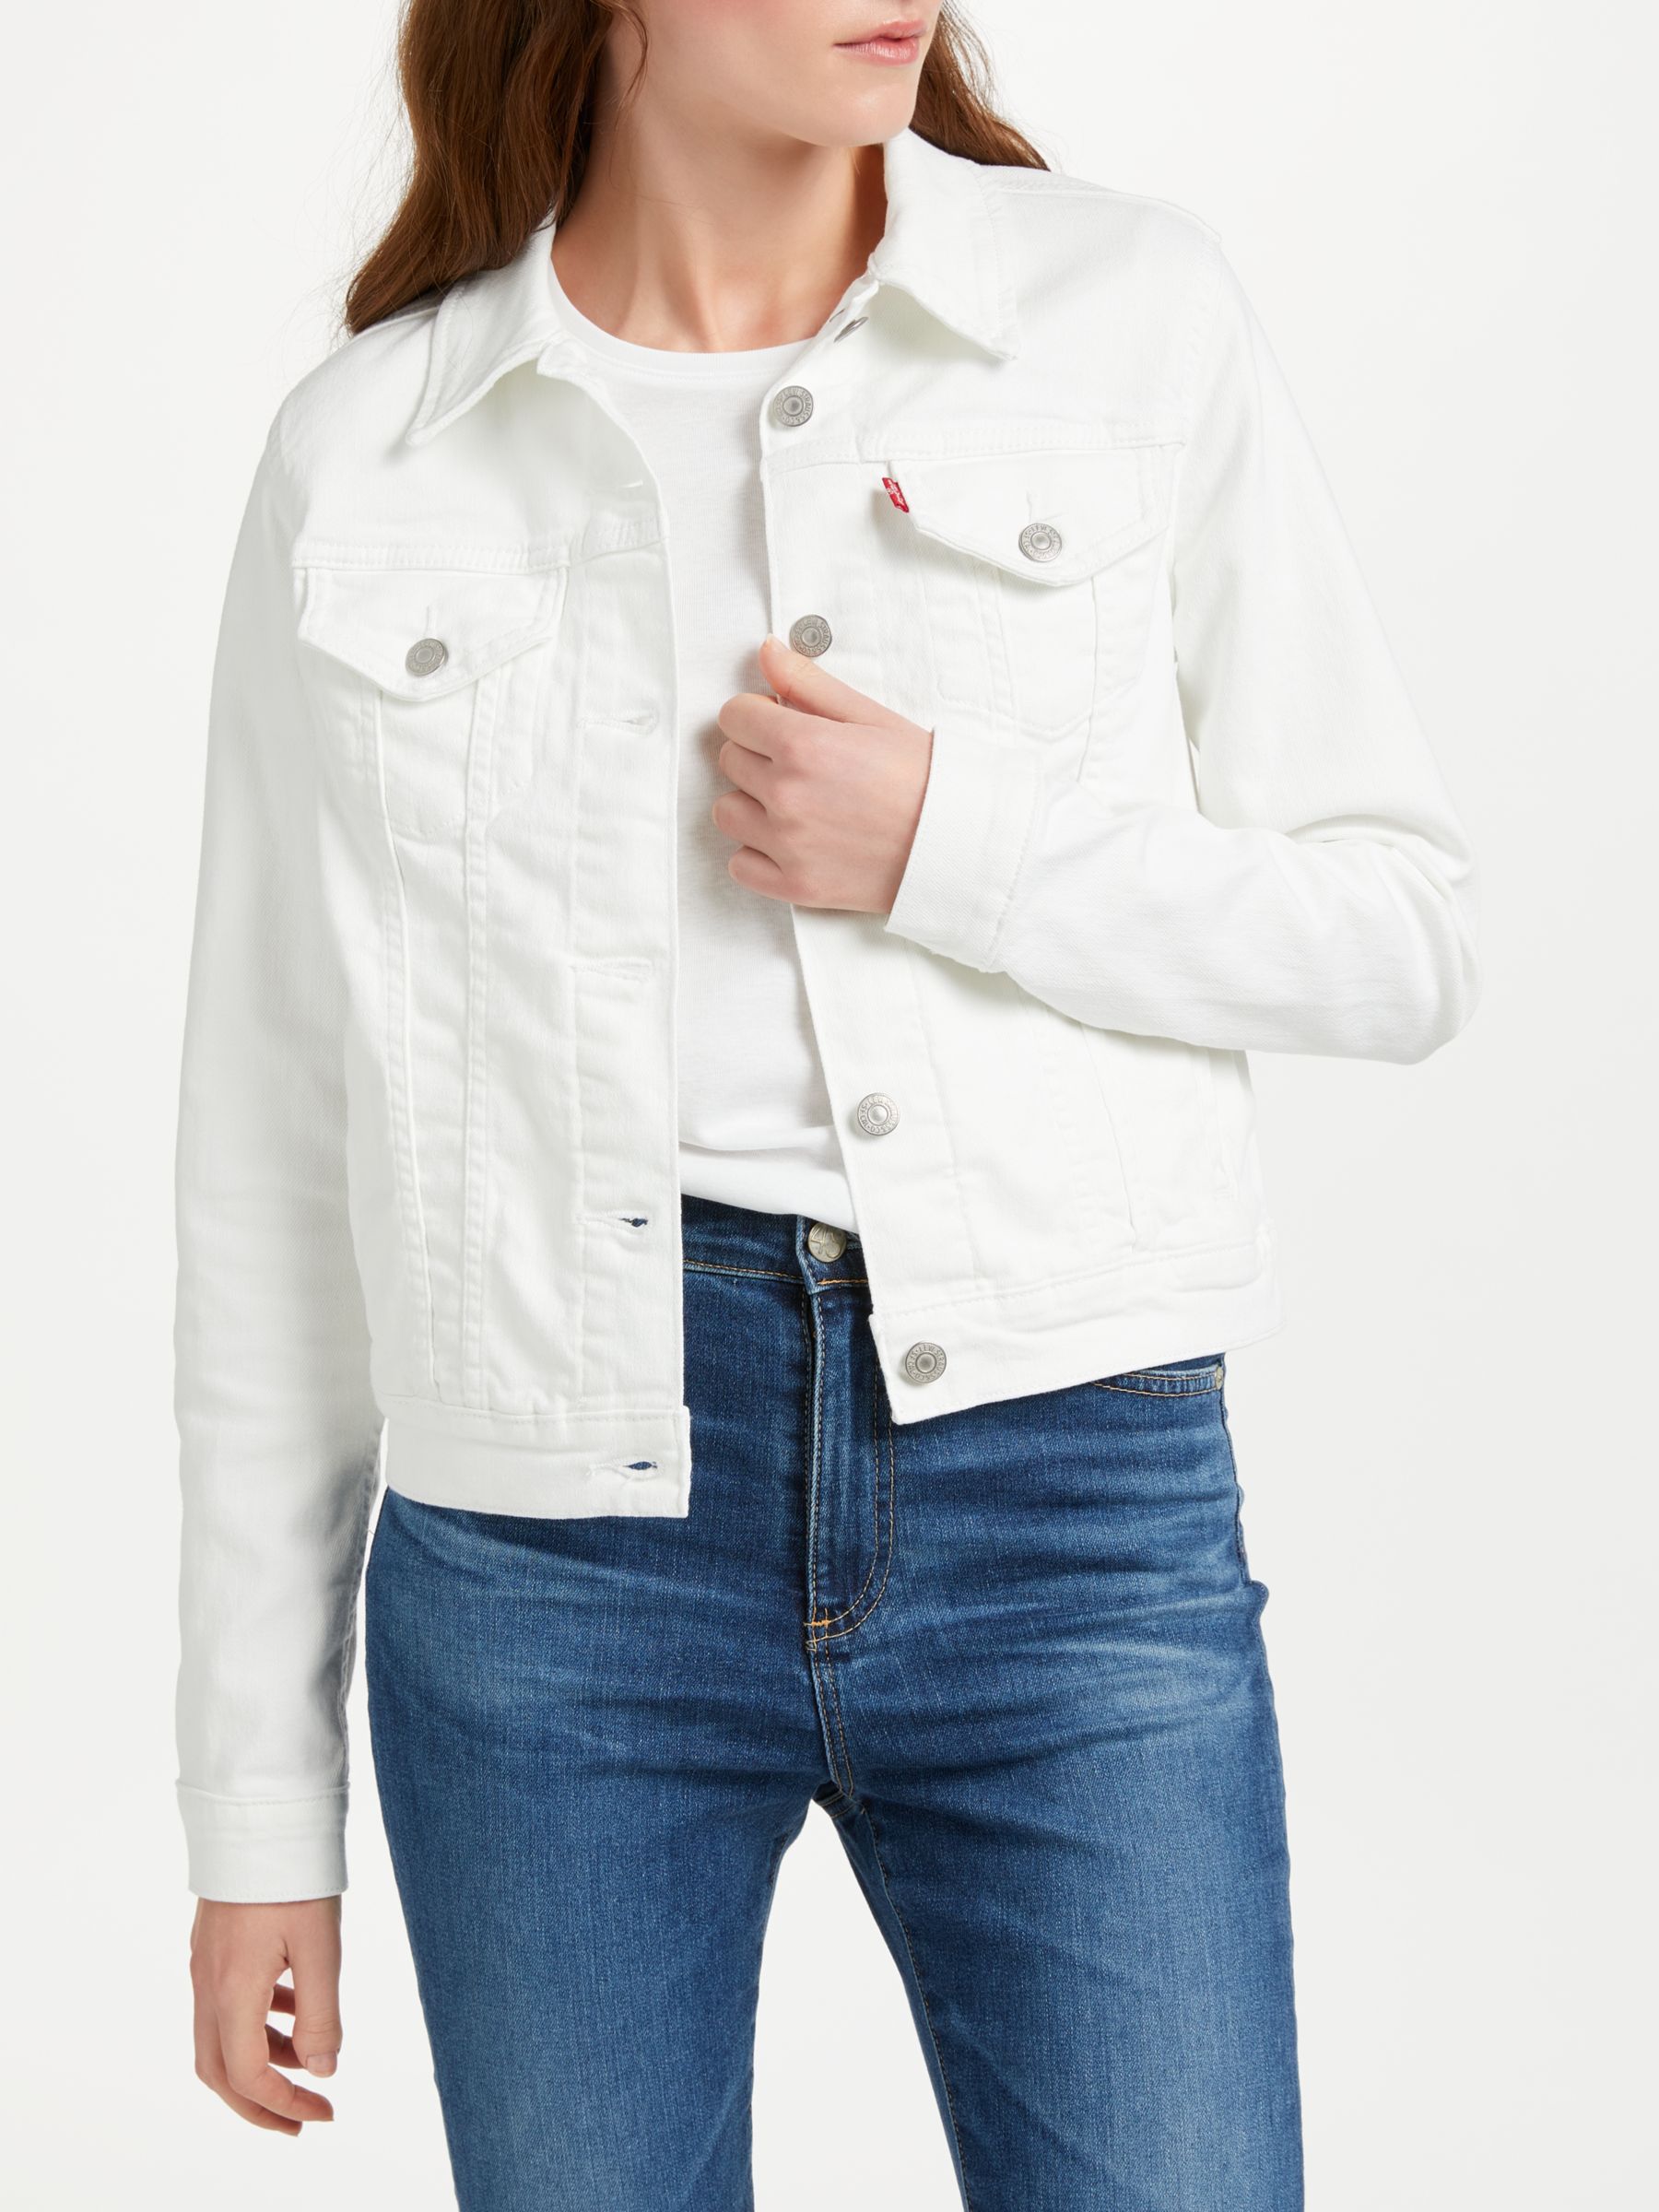 levis jean jacket white